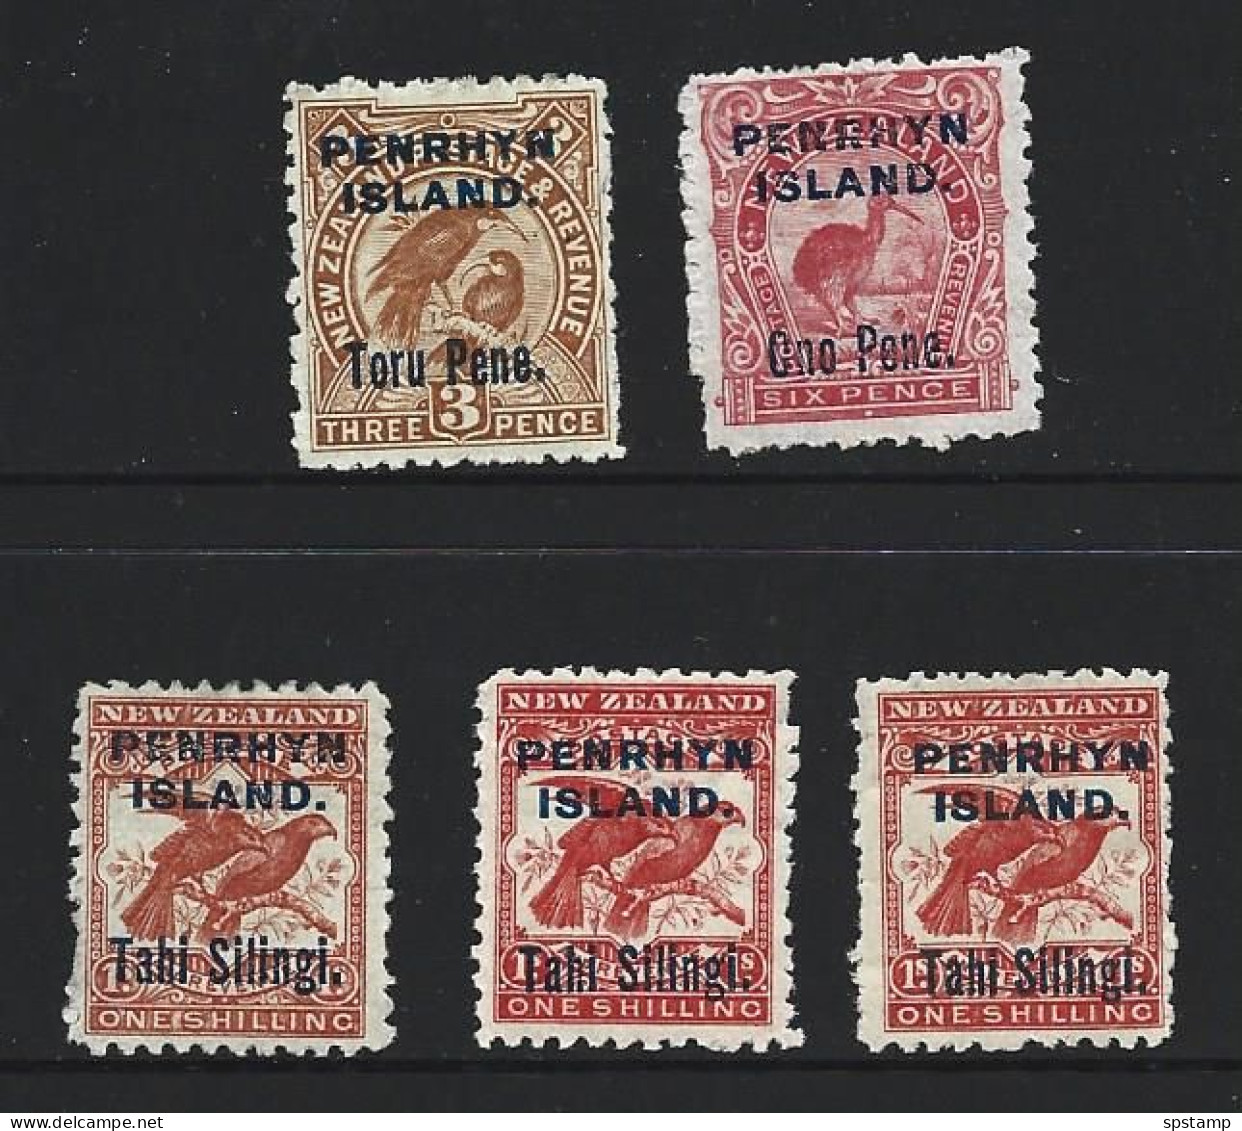 Penrhyn Island 1903 Overprints On NZ Set Of 5 With All Three 1 Shilling Shades FM - Penrhyn